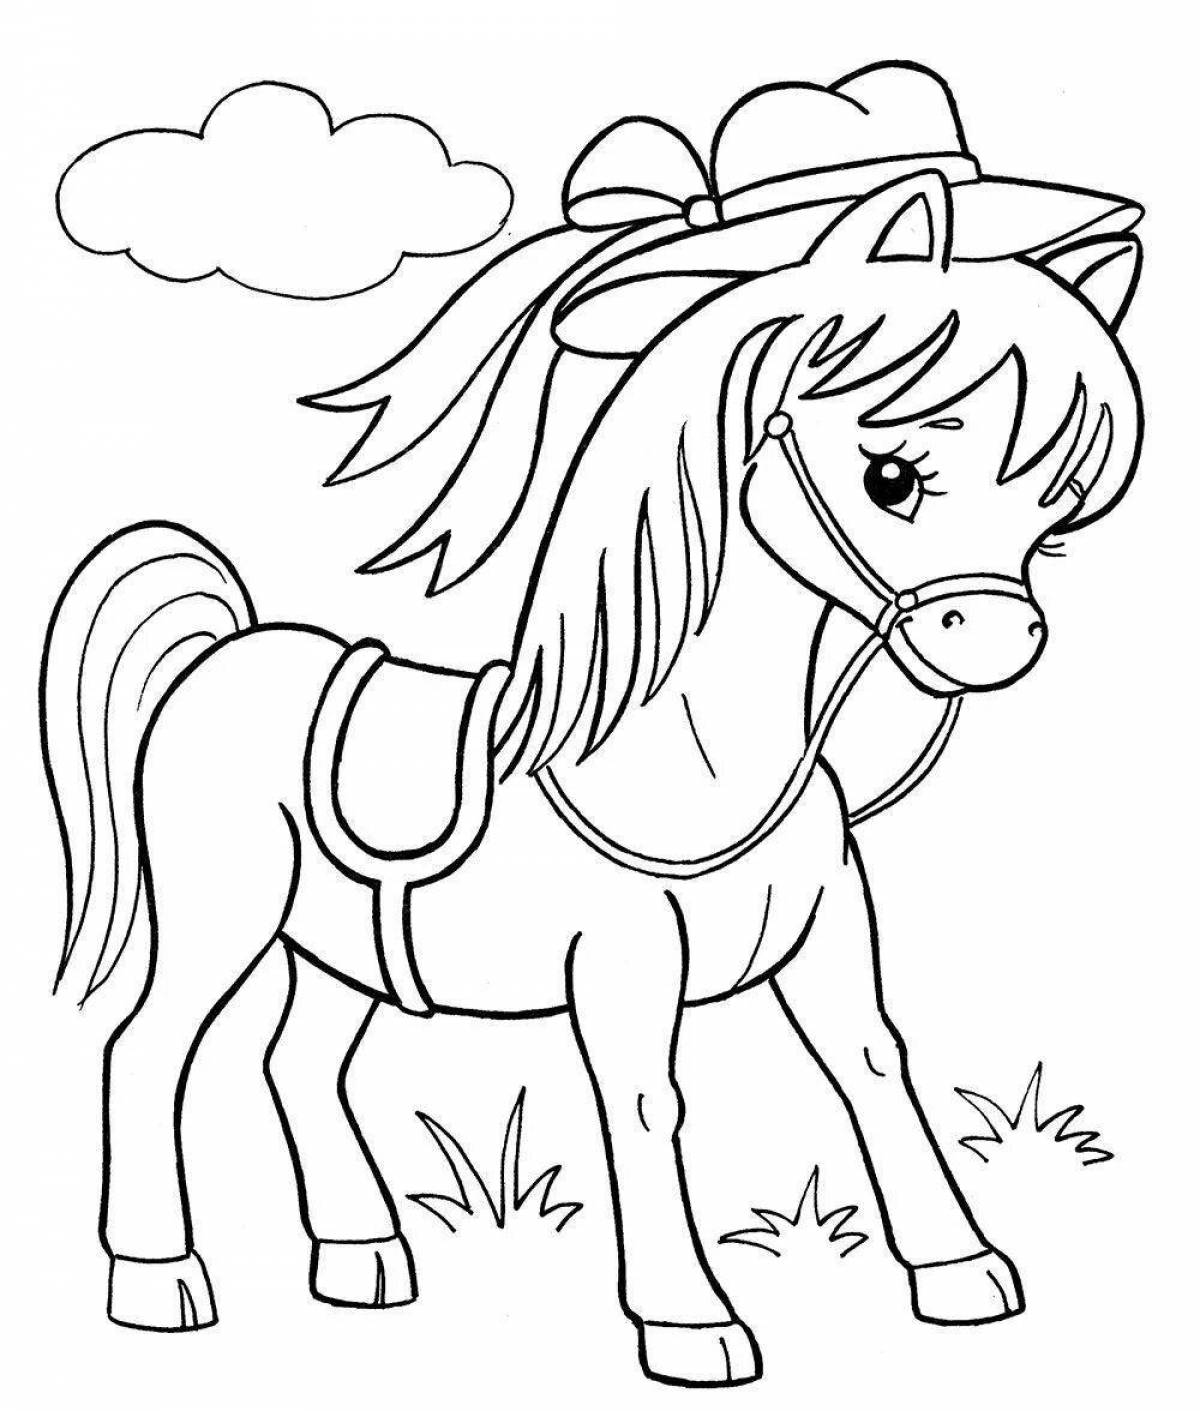 Раскрасить лошадку. Раскраска. Лошадка. Лошадь для раскрашивания. Раскраски лошадки для девочек. Лошадь раскраска для детей.